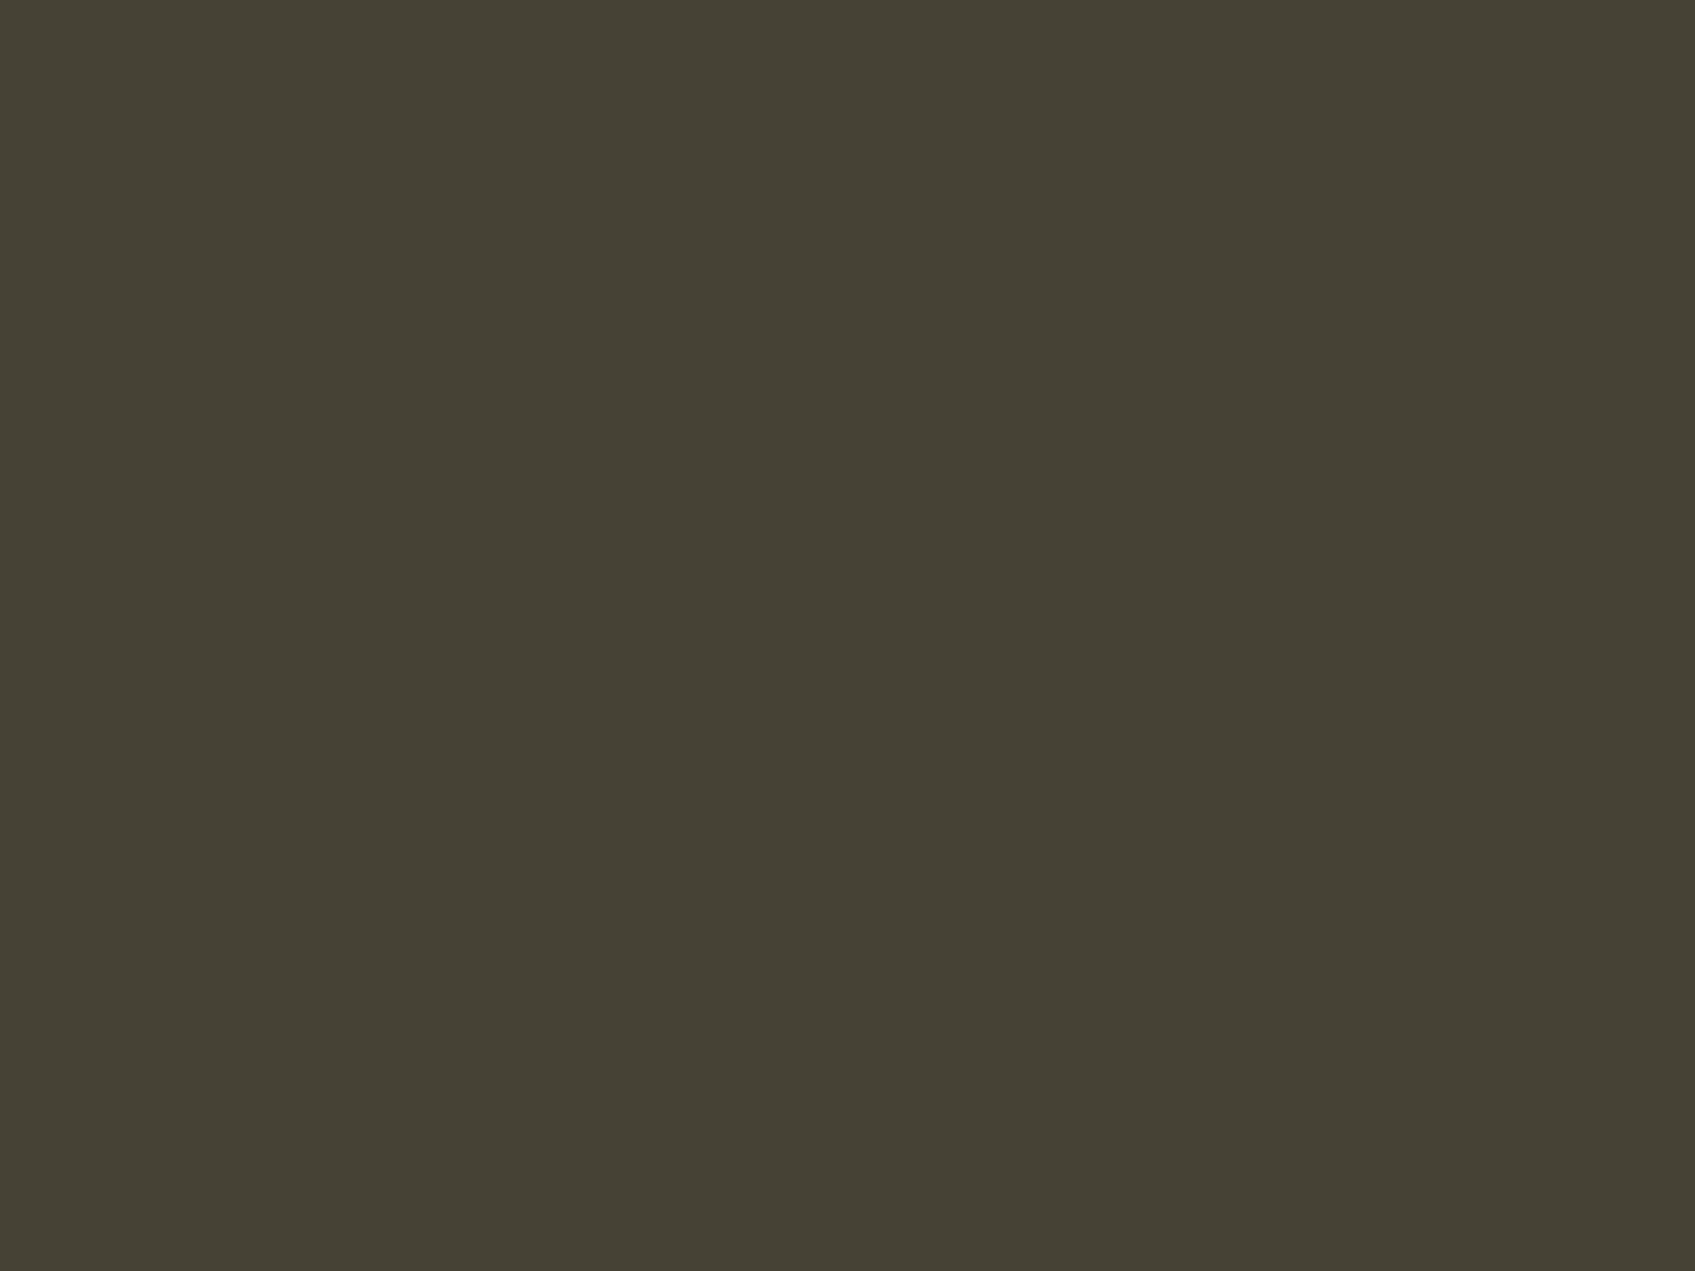 Аким Карнеев. Крестины. 1860-е. Иркутский областной художественный музей им. В.П. Сукачева, Иркутск